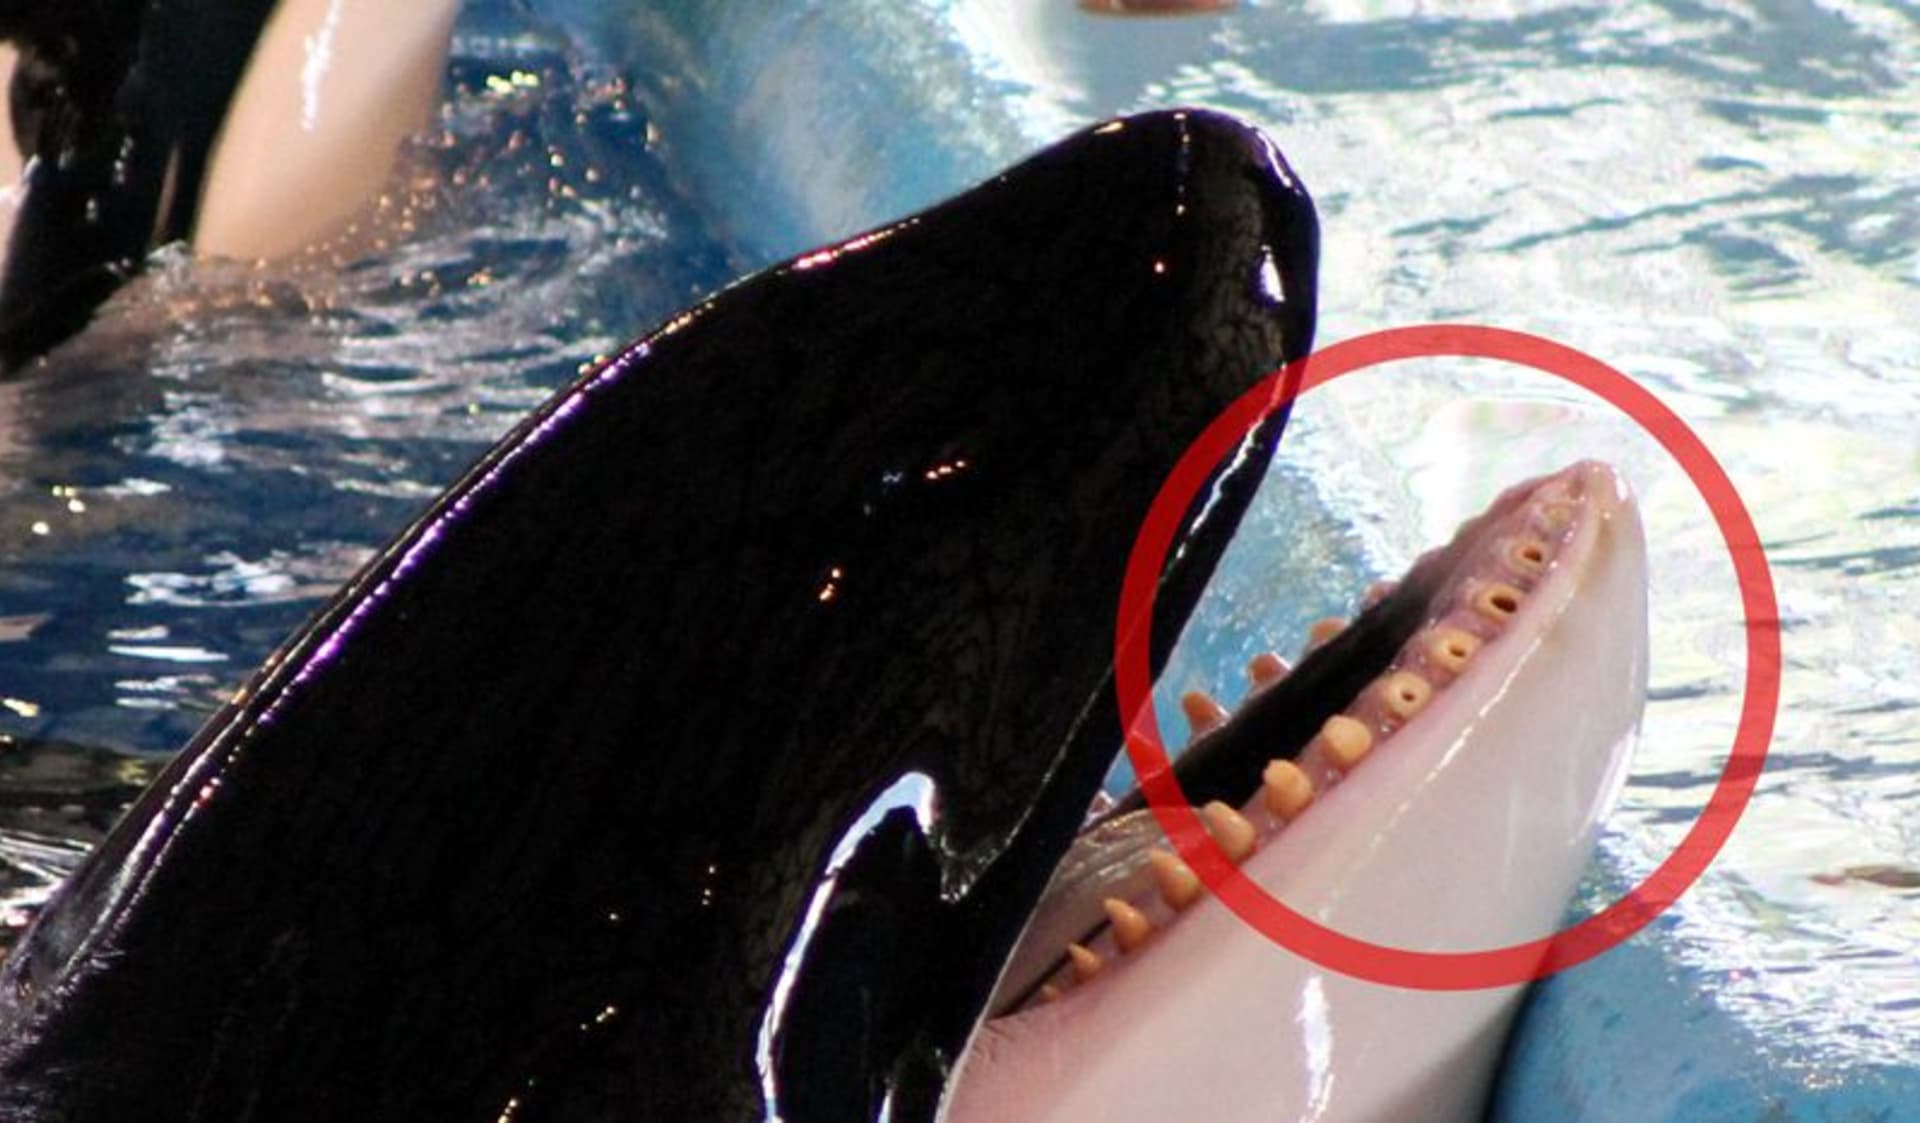 SeaWorld San Antonio byl ze špatného zacházení se zvířaty obviněn již dříve. Kosatky i jiná zvířata tu často podlehnou onemocnění a způsobují si těžká zranění.